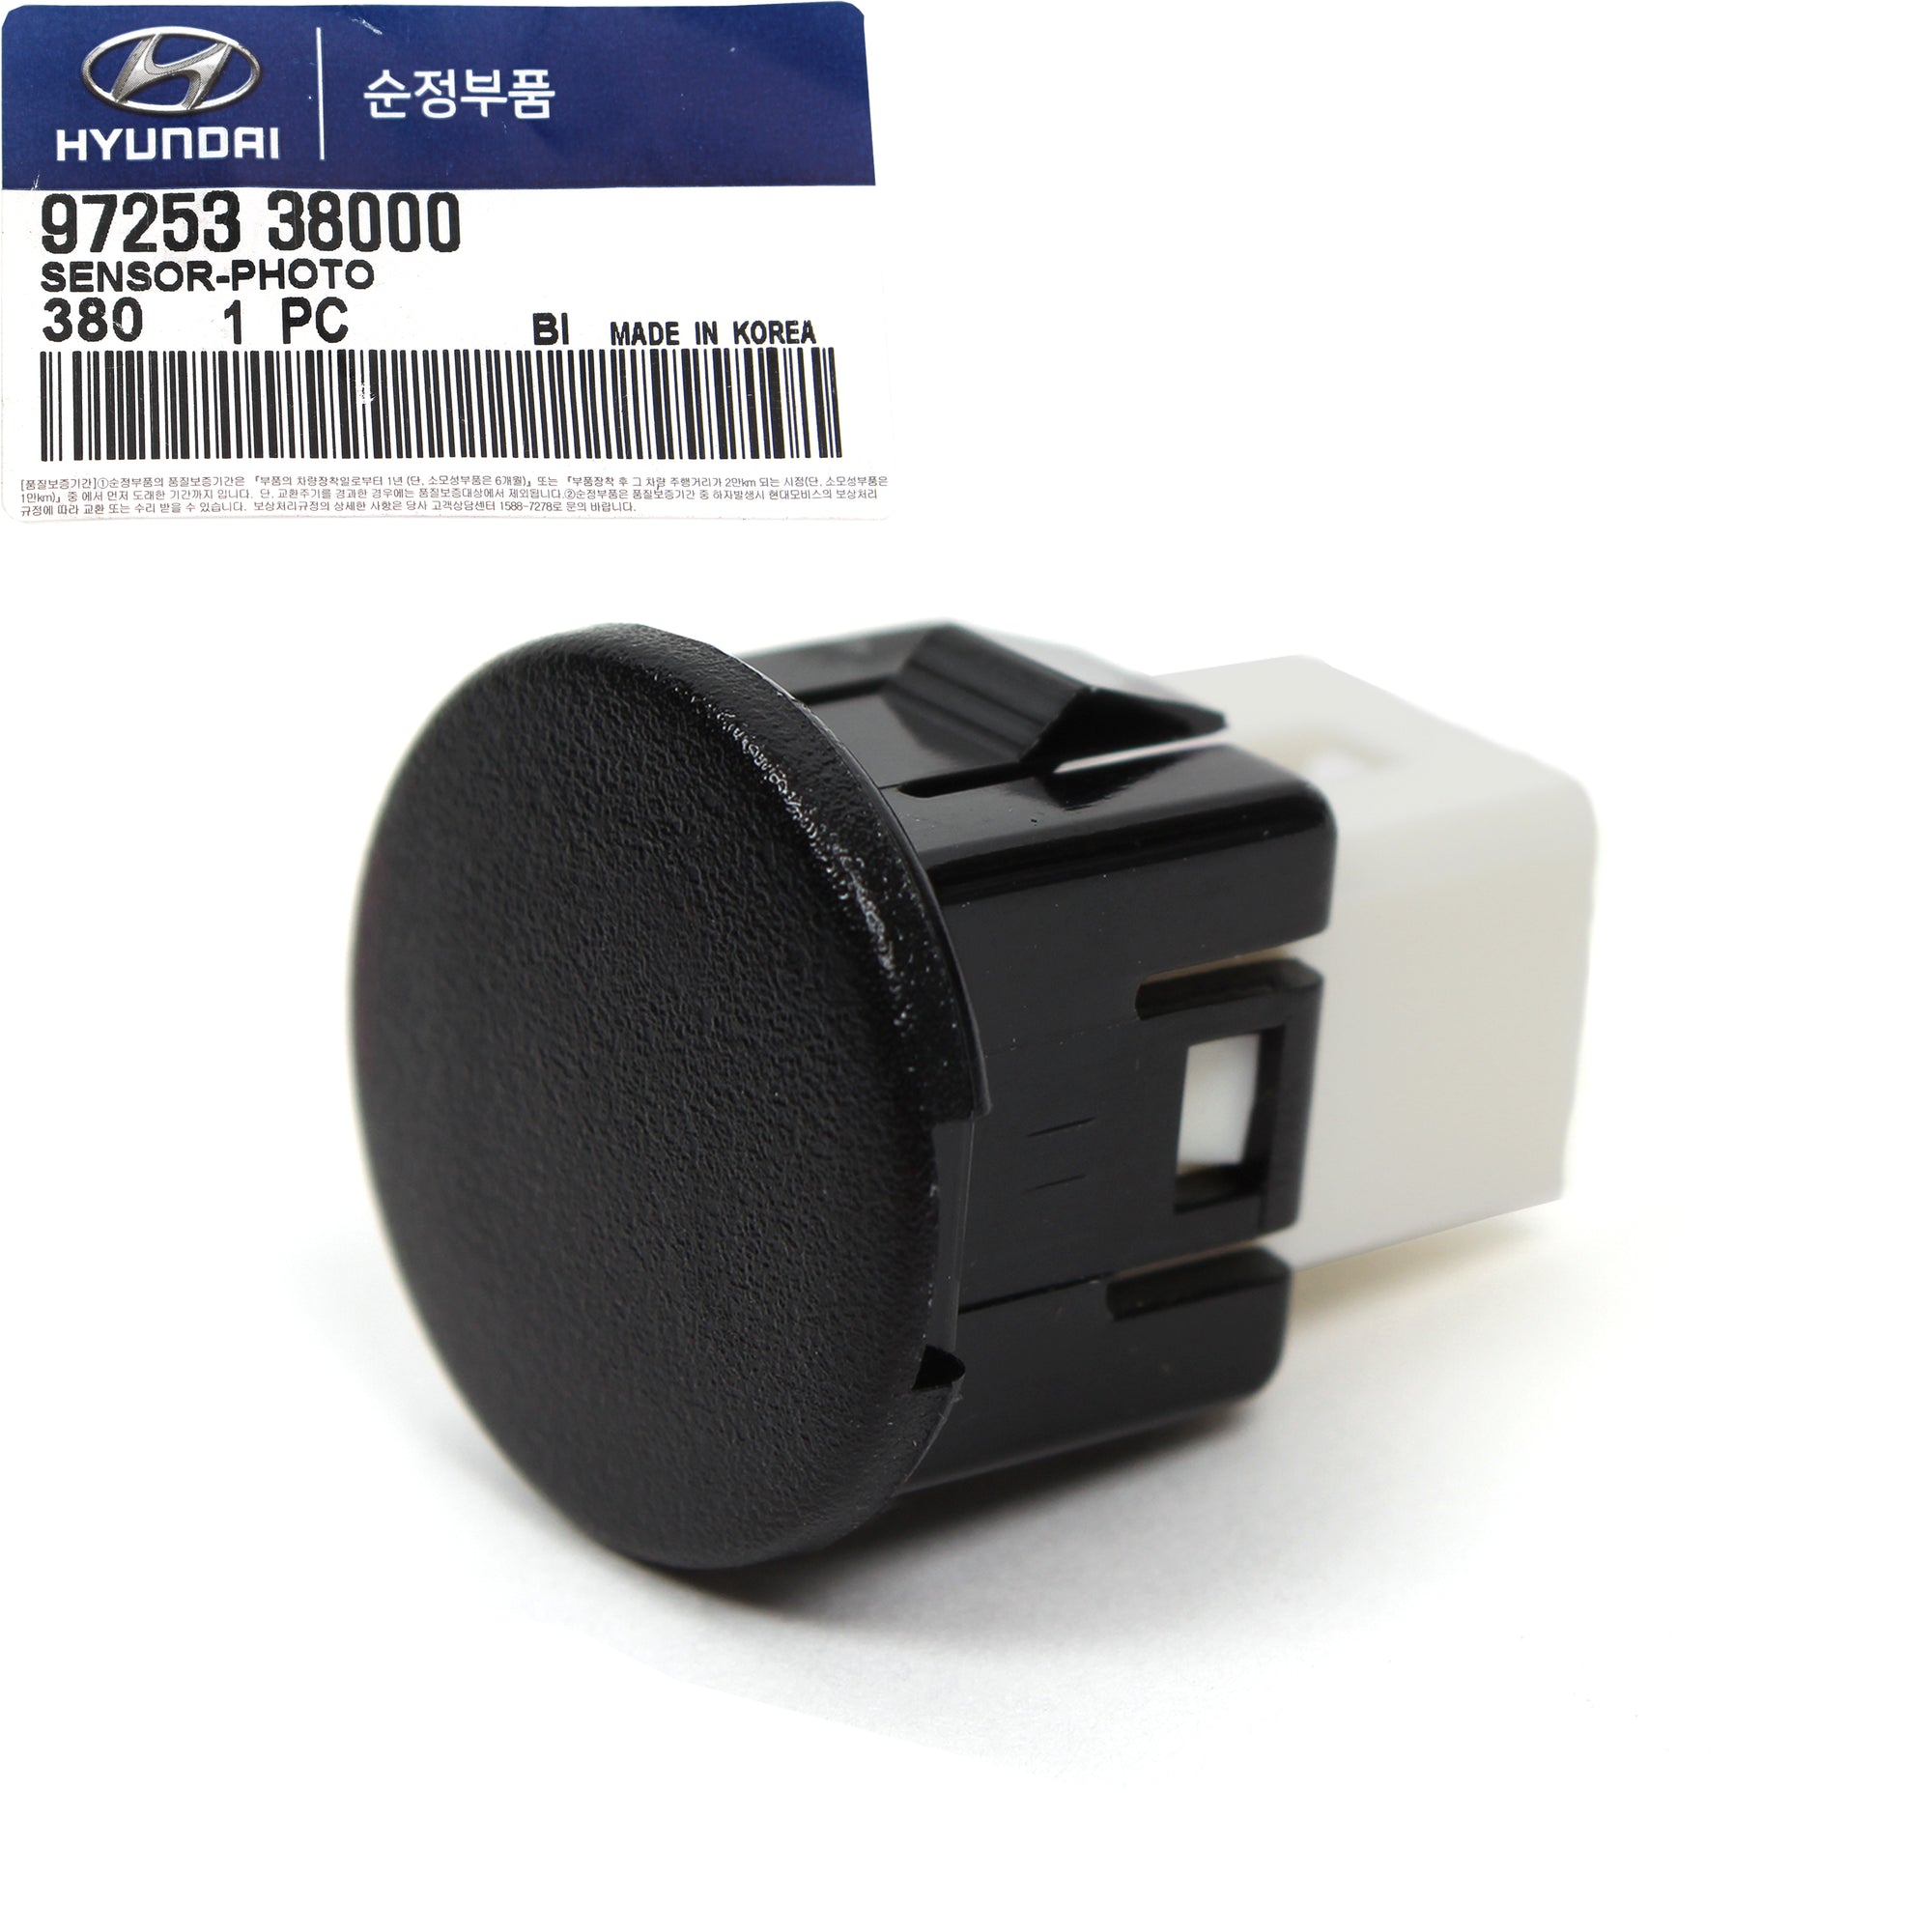 GENUINE Temperature Sensor for Elantra Sonata XG350 Optima Sorento 97253-38000